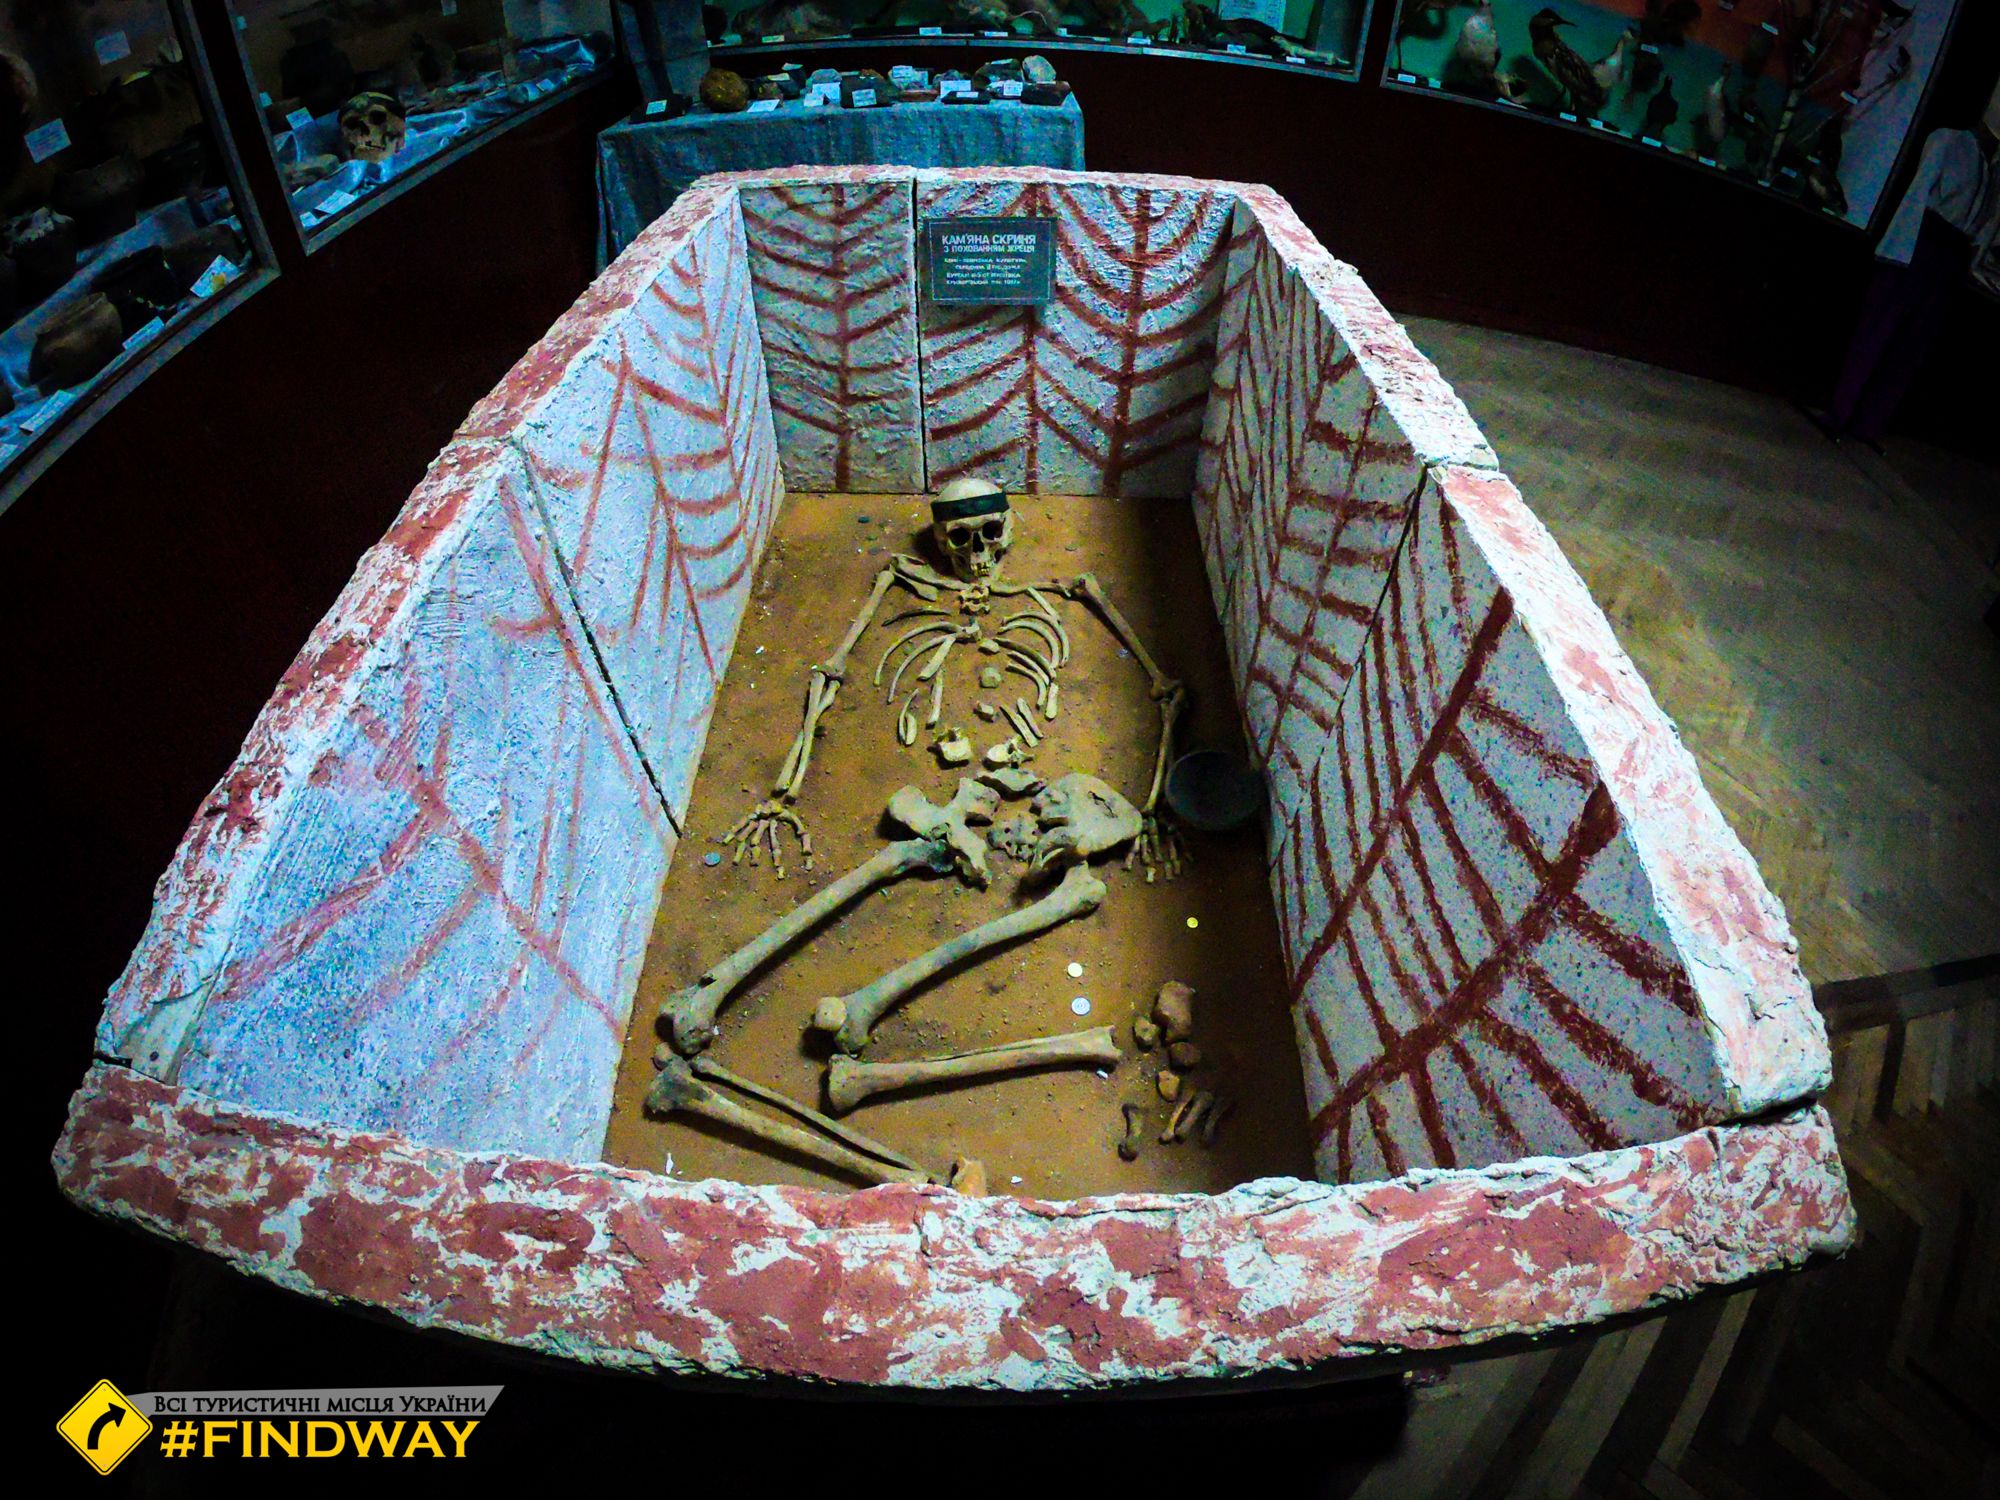 цікаві музеї кривого рогу терновська філія краєзнавчого музею фото кривий ріг секелет стародавнє поховання